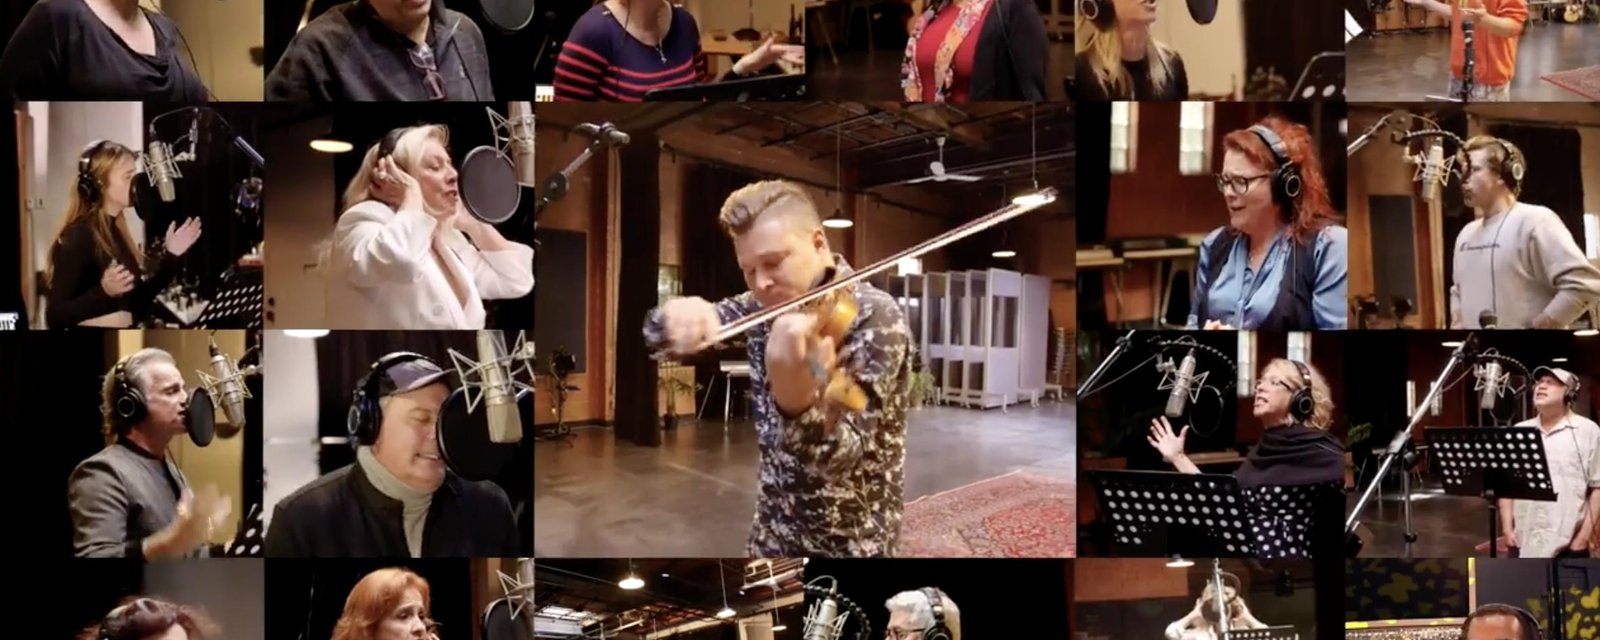 À VOIR: Vos artistes préférés reprennent Le blues du businessman dans une vidéo extraordinaire